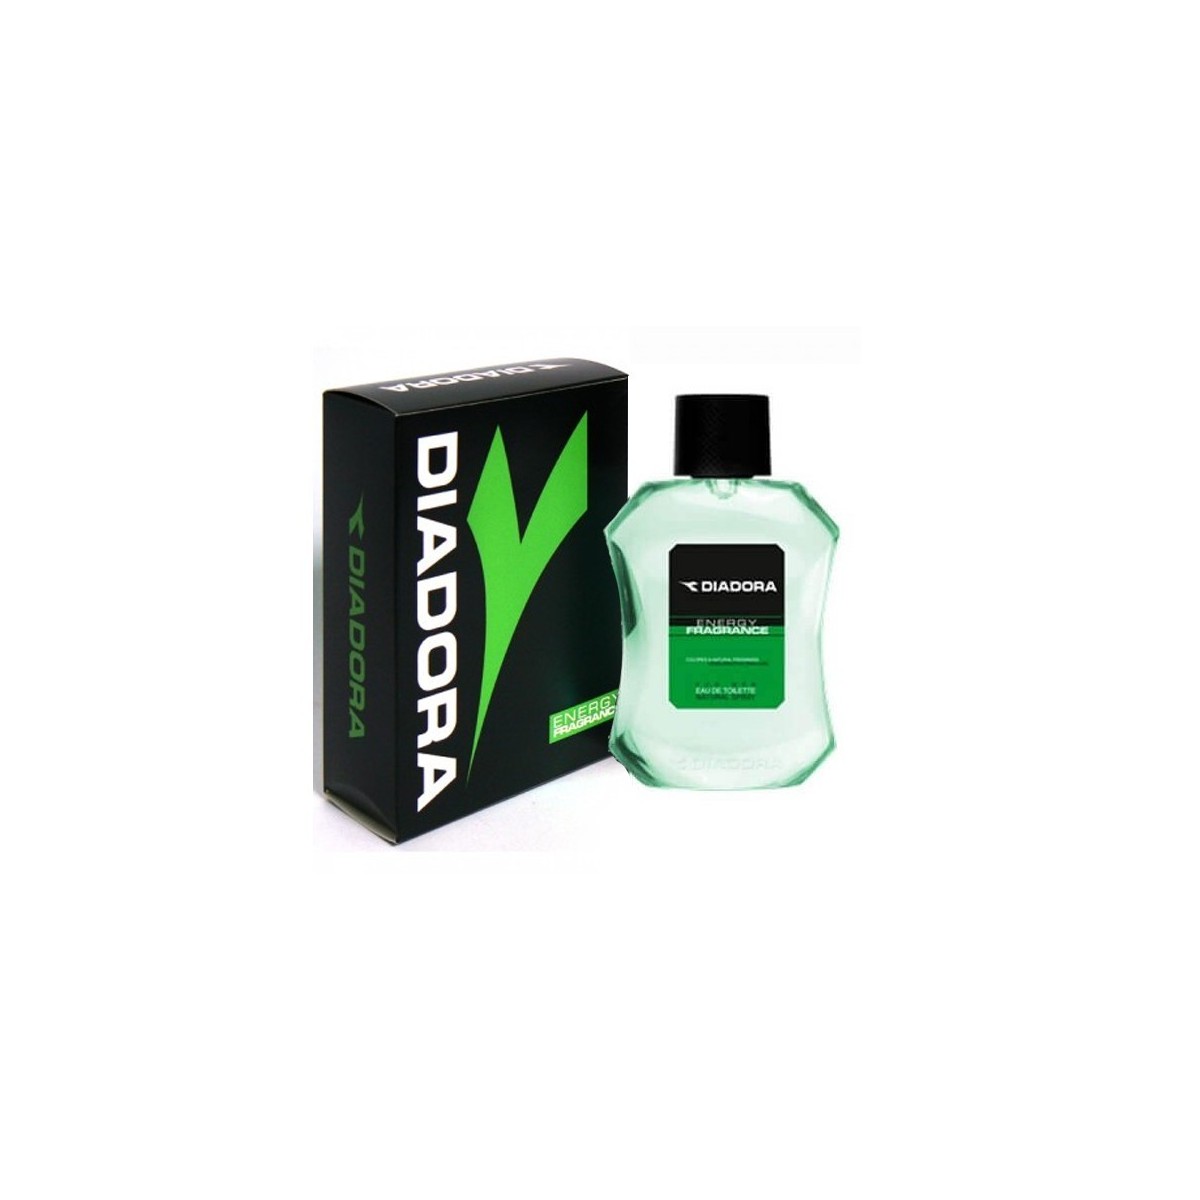 Diadora Green Eau de Toilette 100ml spray